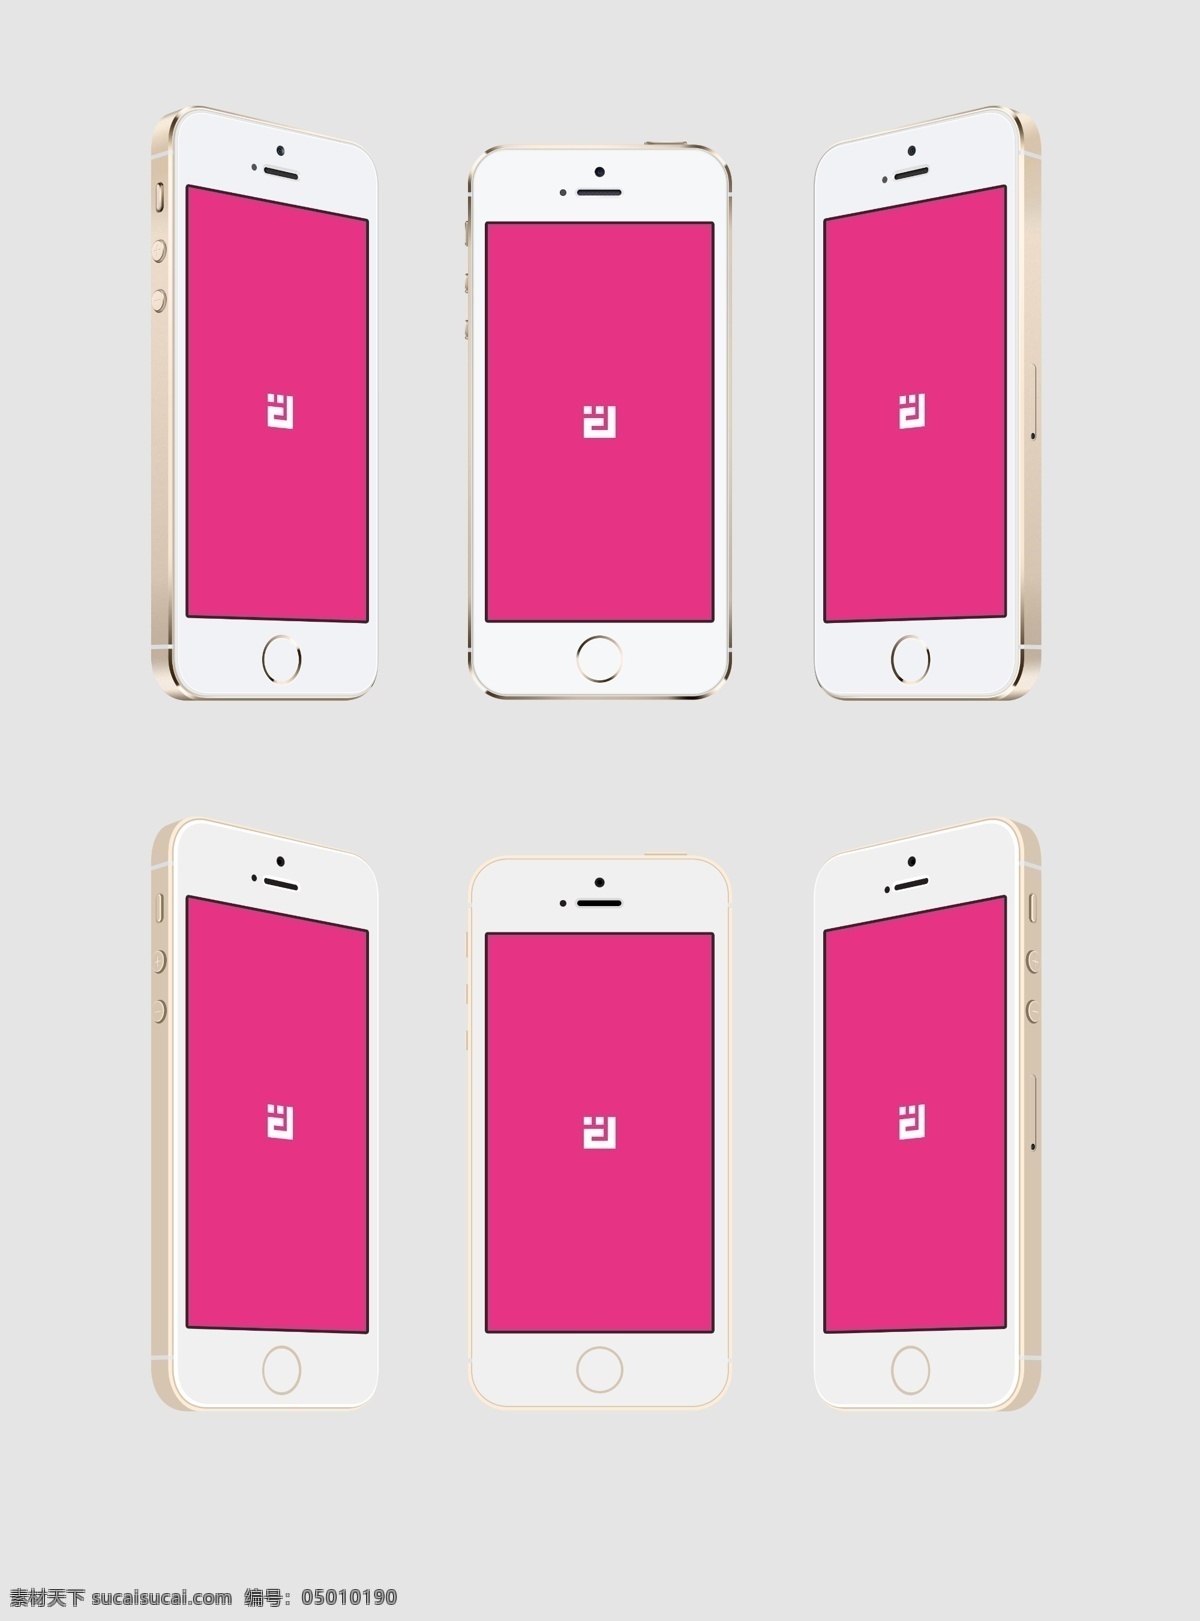 苹果5s 苹果 iphone5s 新款苹果 模型 苹果手机 苹果五代 iphone5 代 智能手机 ios7 土豪金 香槟金 现代科技 数码产品 白色